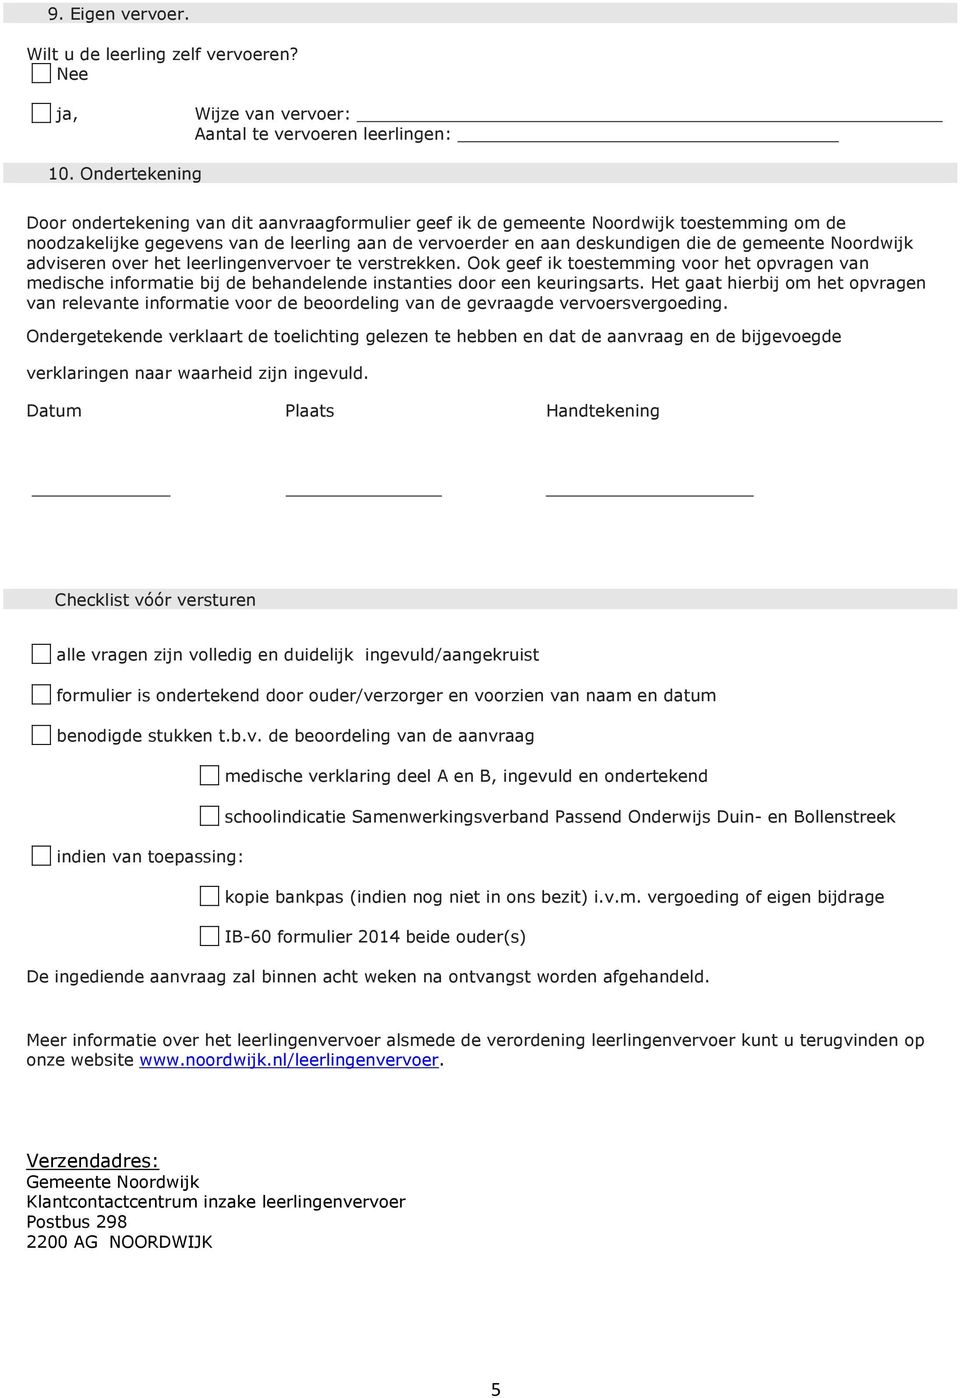 Noordwijk adviseren over het leerlingenvervoer te verstrekken. Ook geef ik toestemming voor het opvragen van medische informatie bij de behandelende instanties door een keuringsarts.